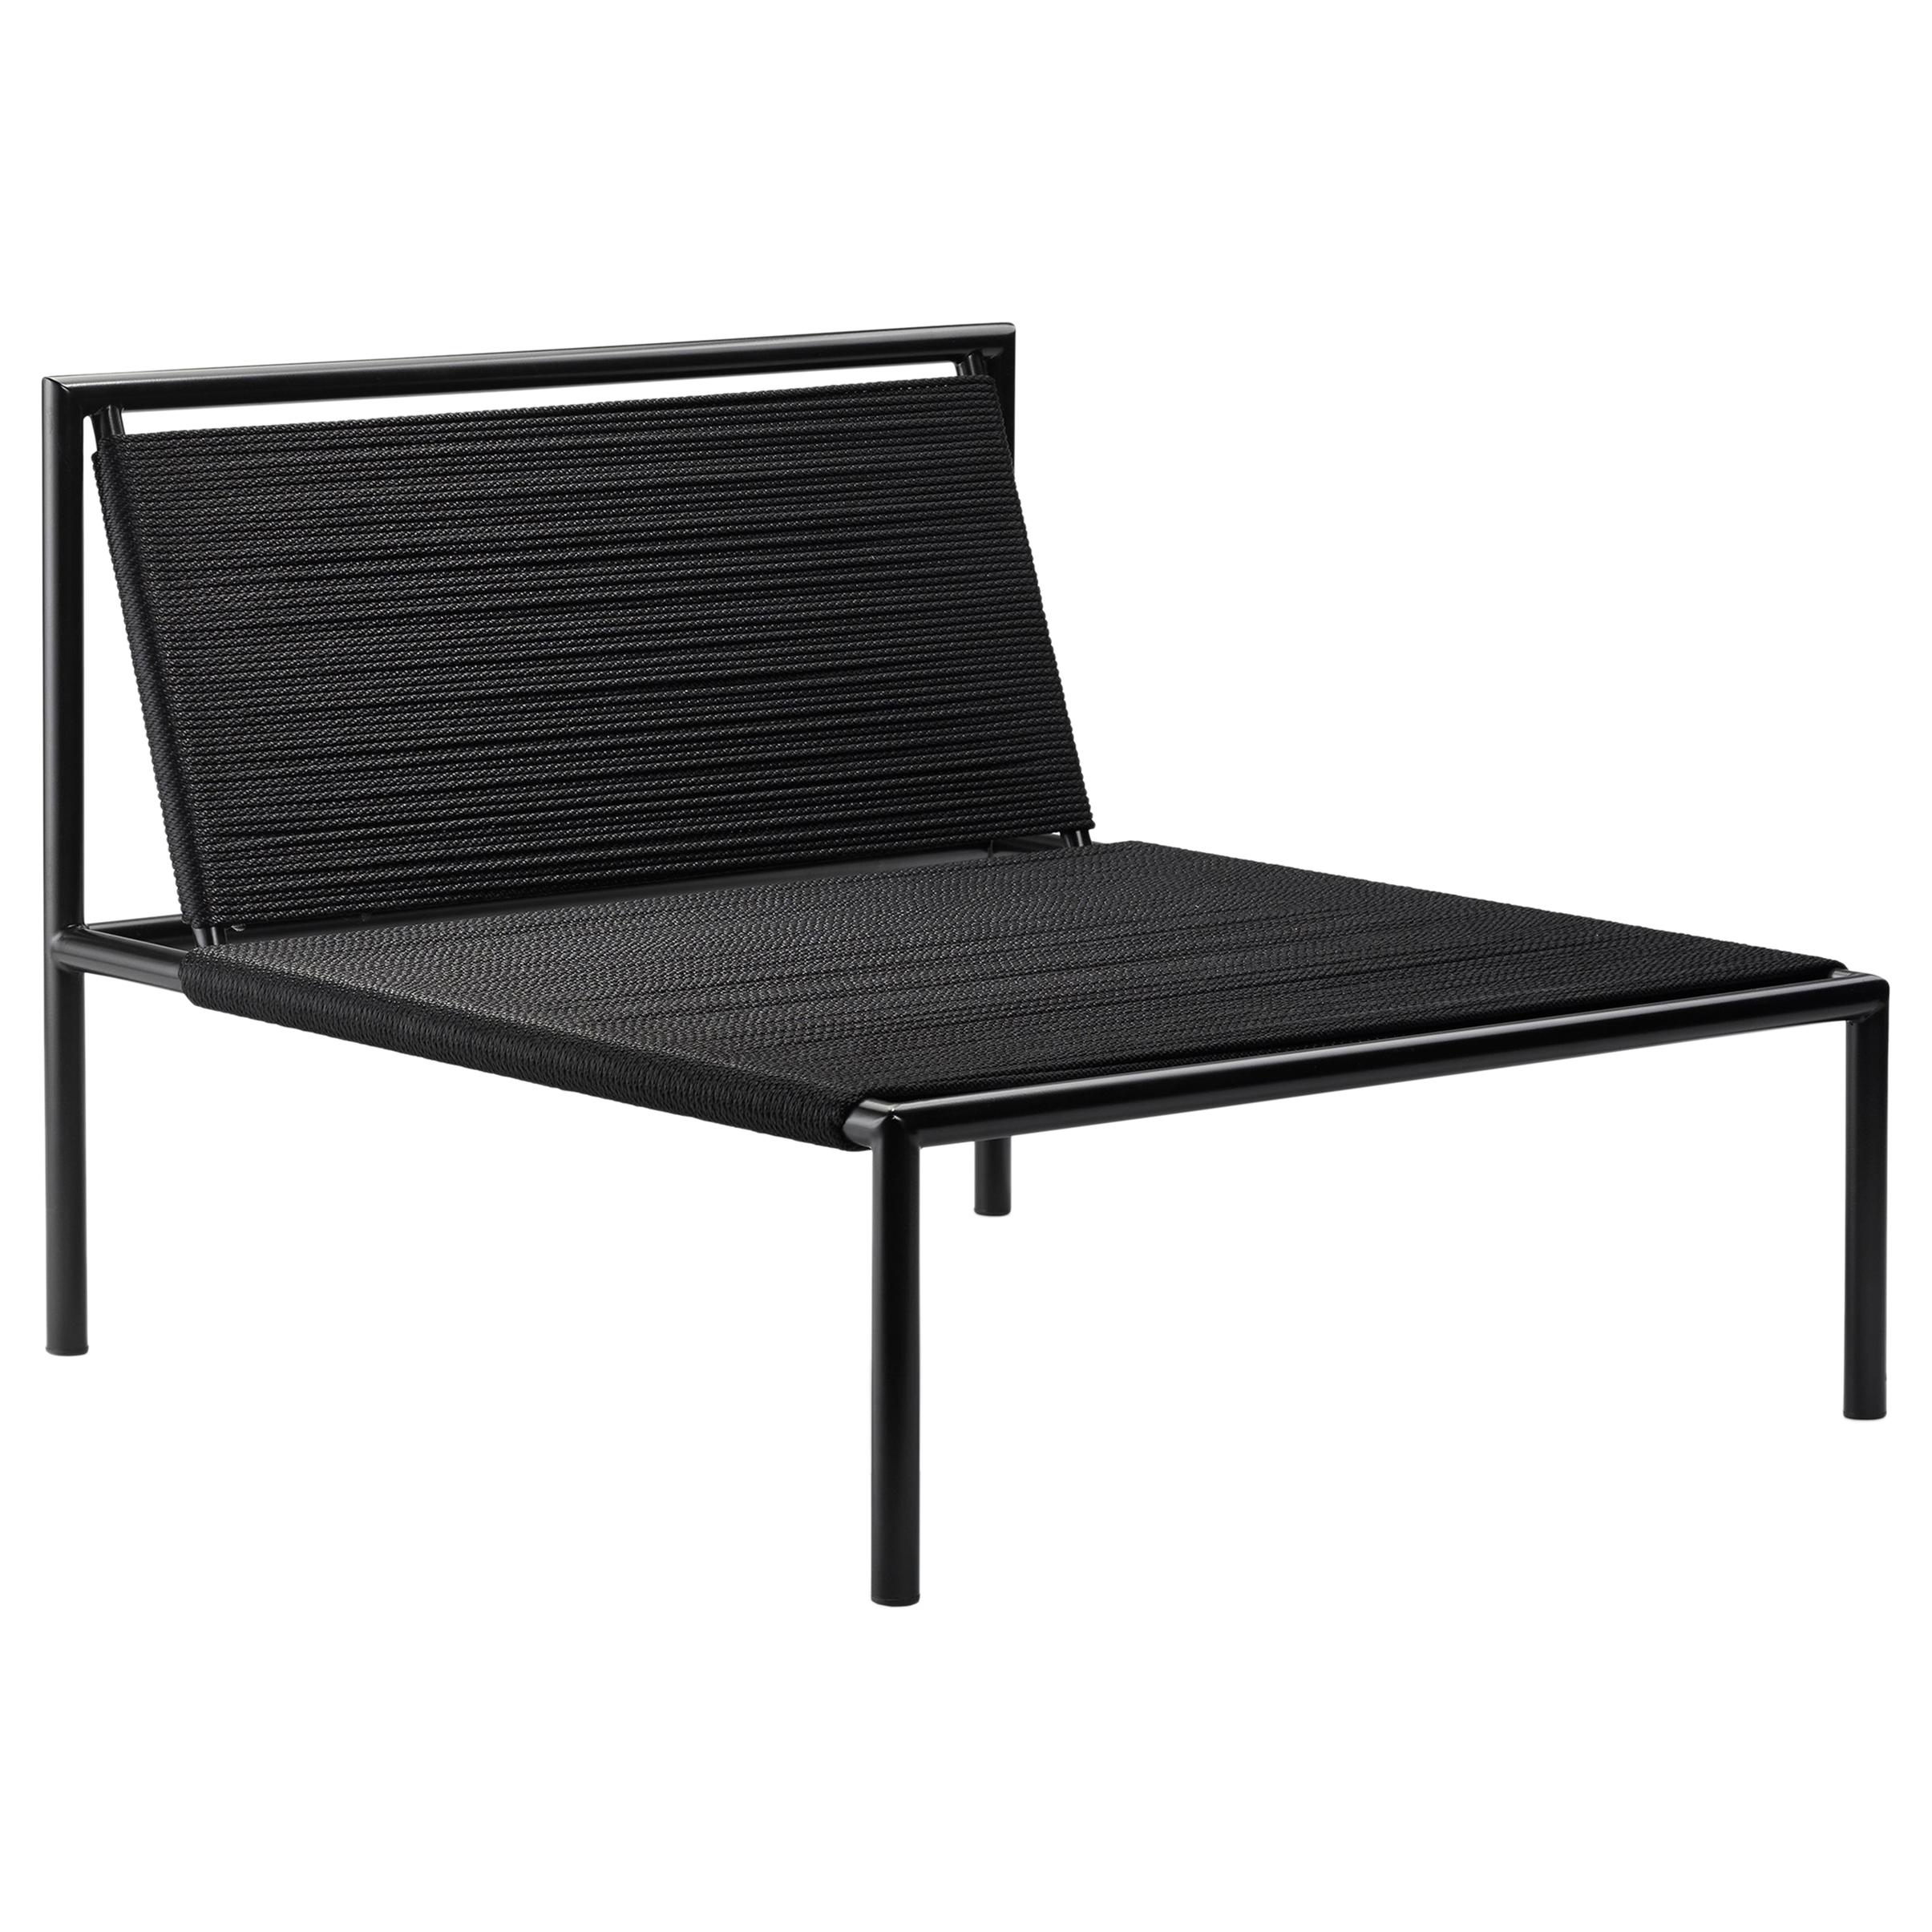 Chaise d'extérieur sans accoudoirs en acier inoxydable avec revêtement en poudre noire et corde en nylon